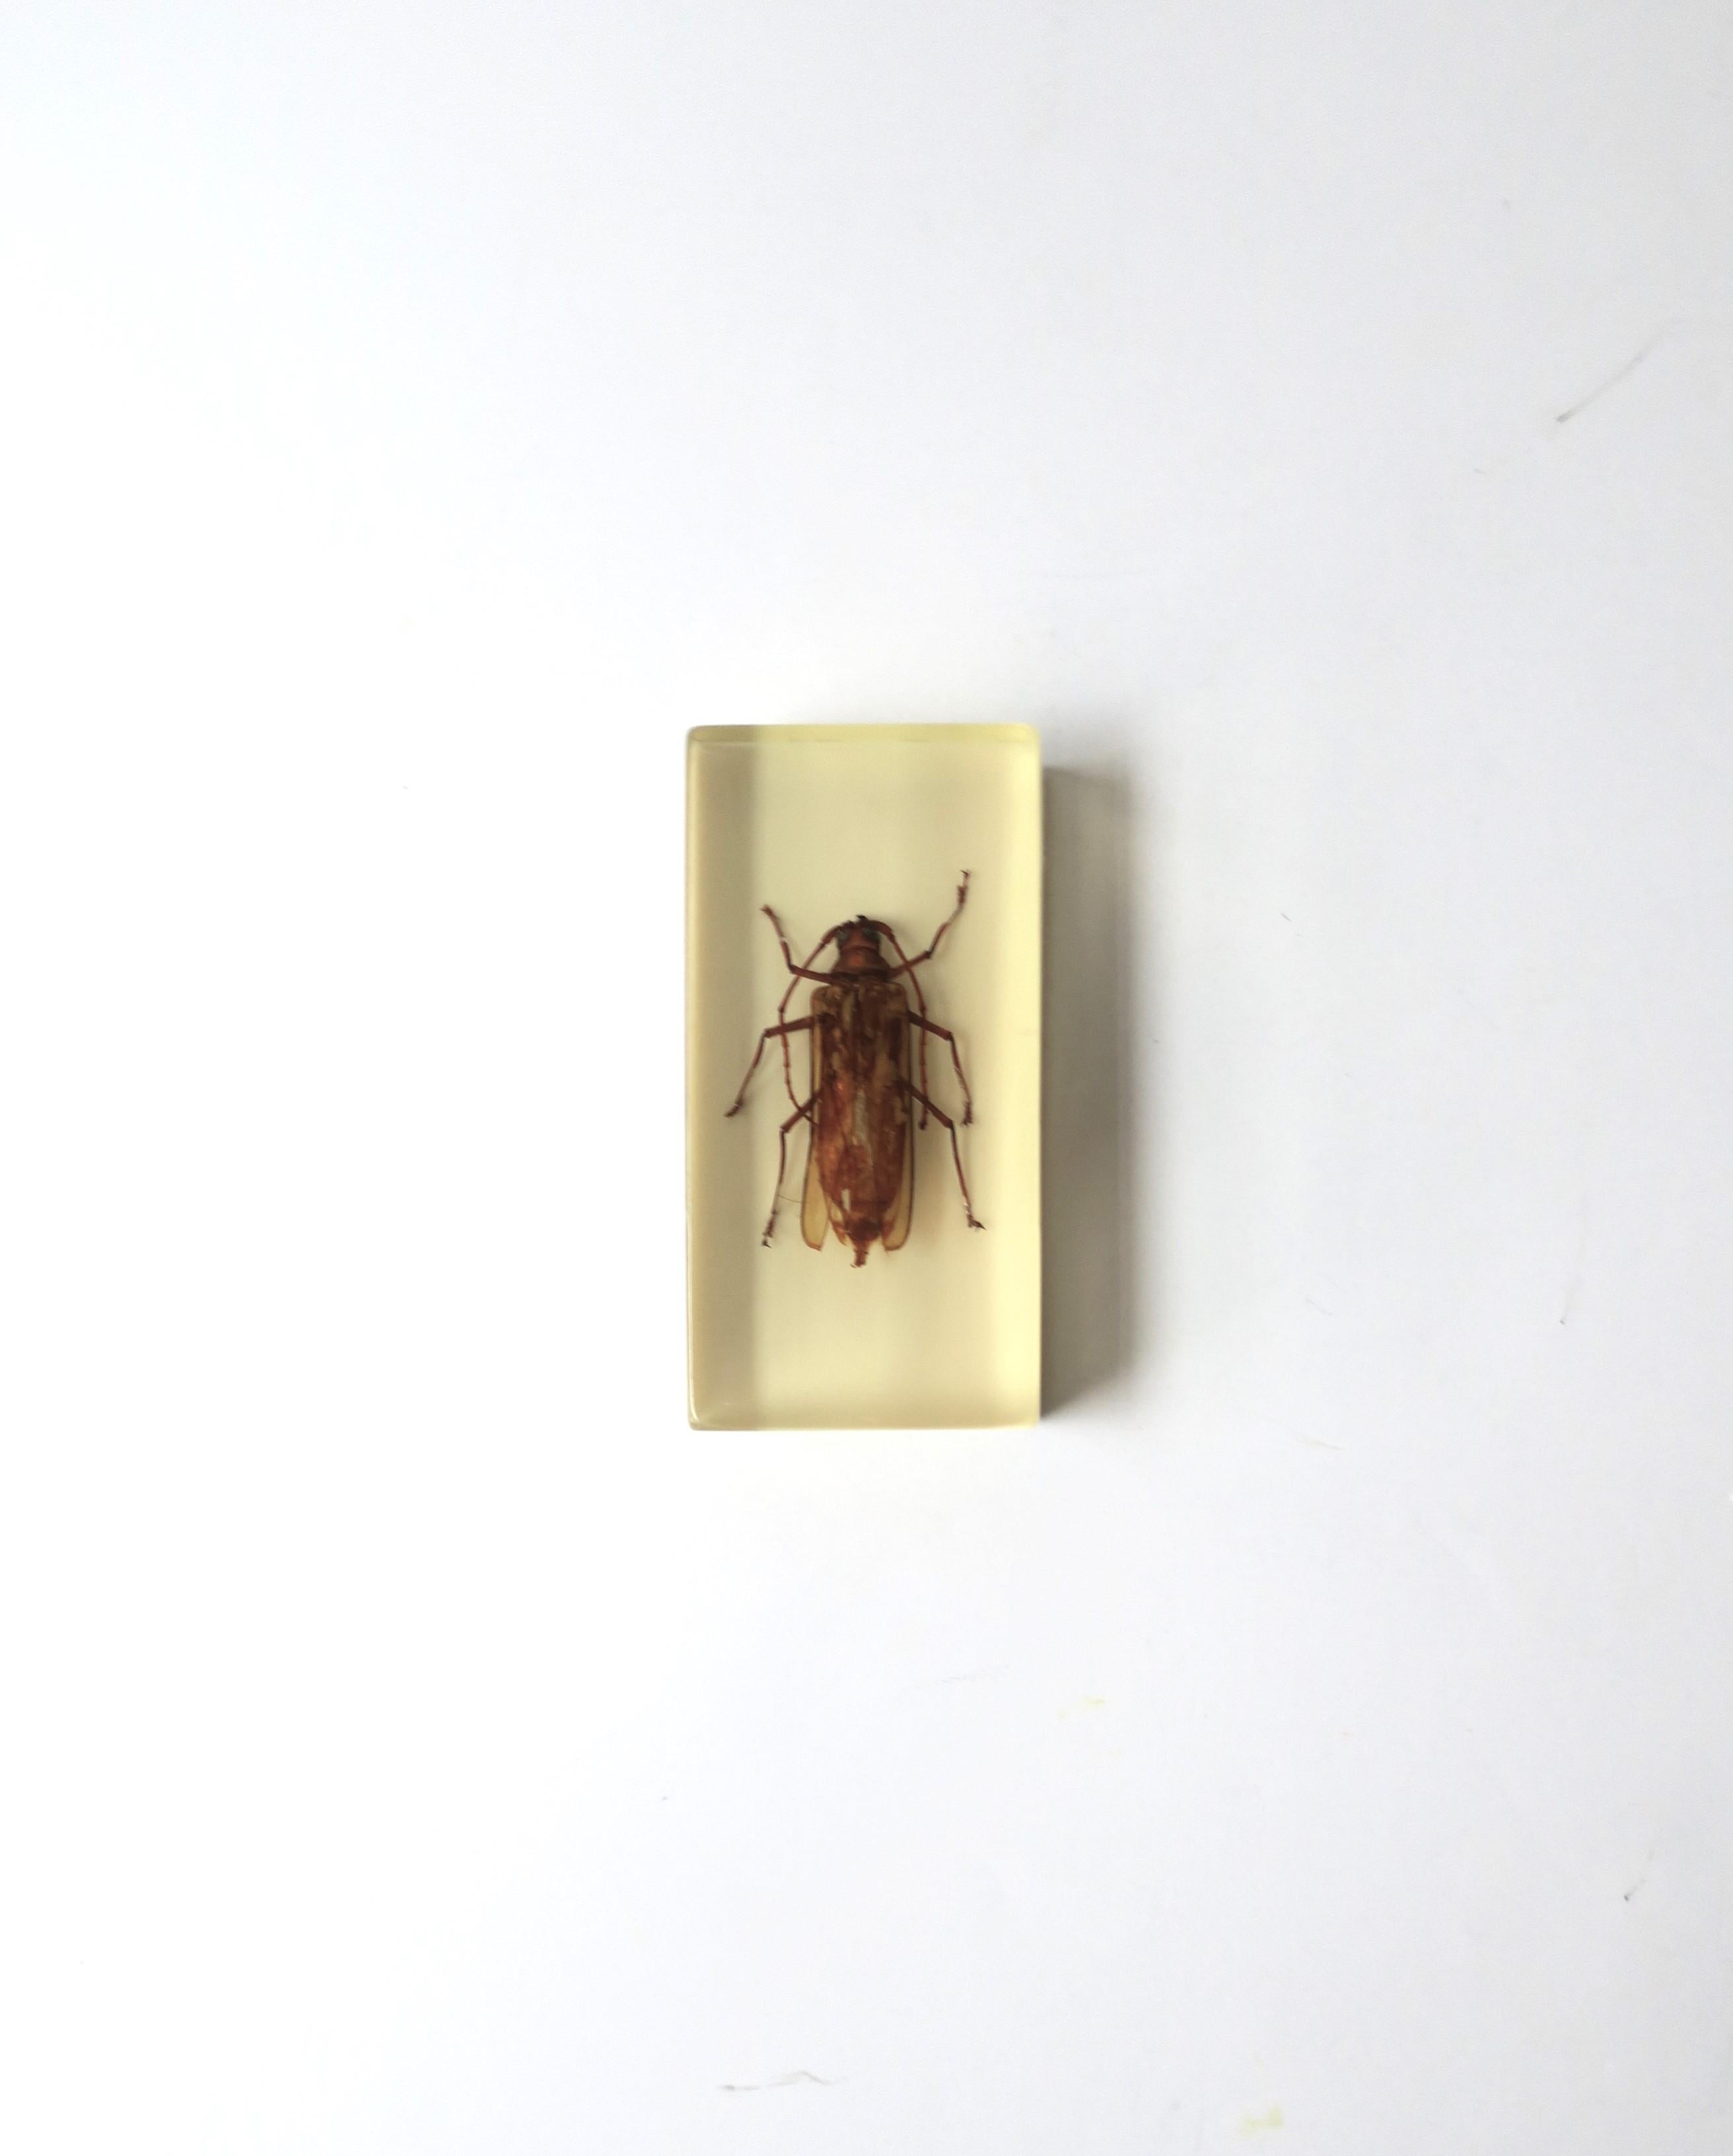 Dekoratives Objekt oder Briefbeschwerer aus Lucite, circa Mitte des 20. Jahrhunderts, mit Insektengehäuse. Ein großartiges Stück für einen Schreibtisch, eine Bibliothek, ein Regal usw. Abmessungen: 2,07